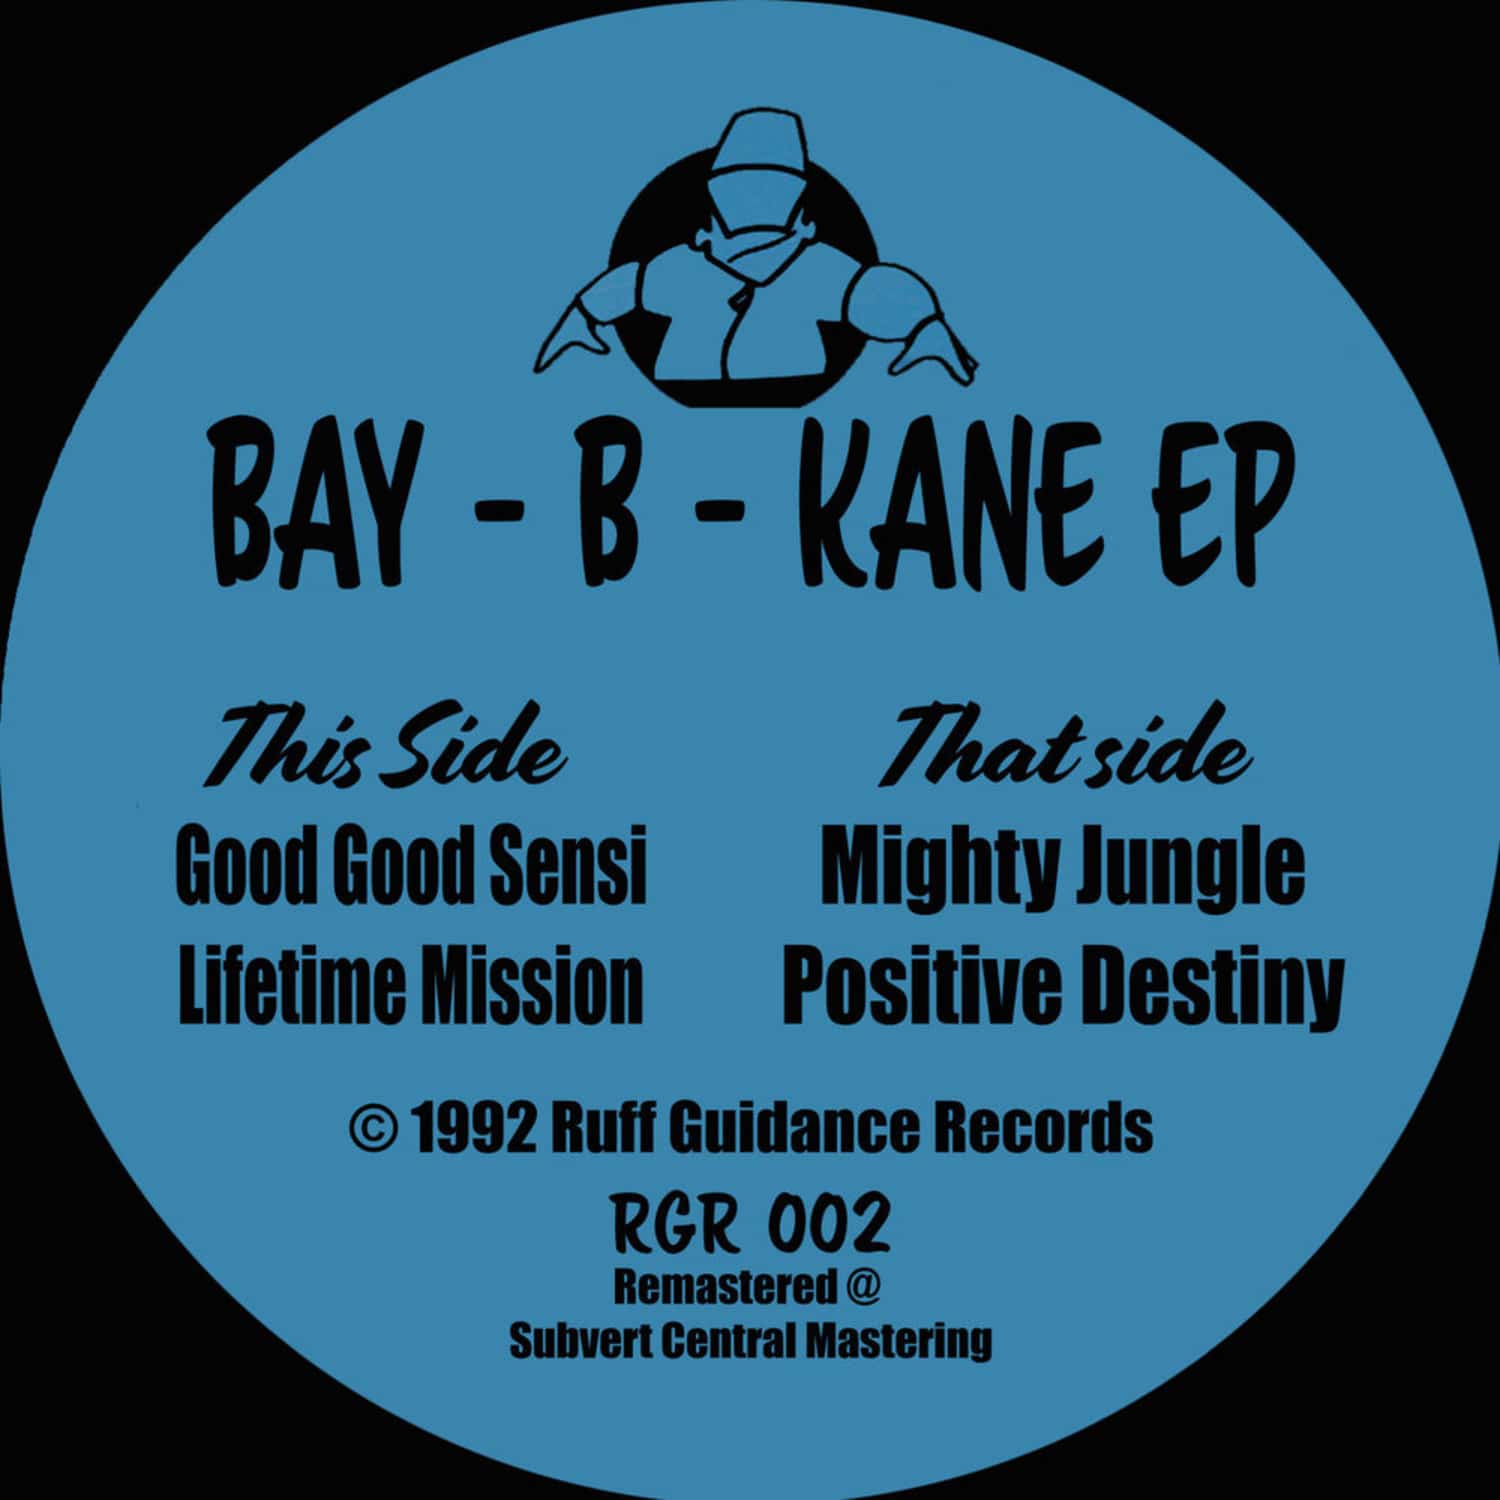 Bay B Kane - BY B KANE EP